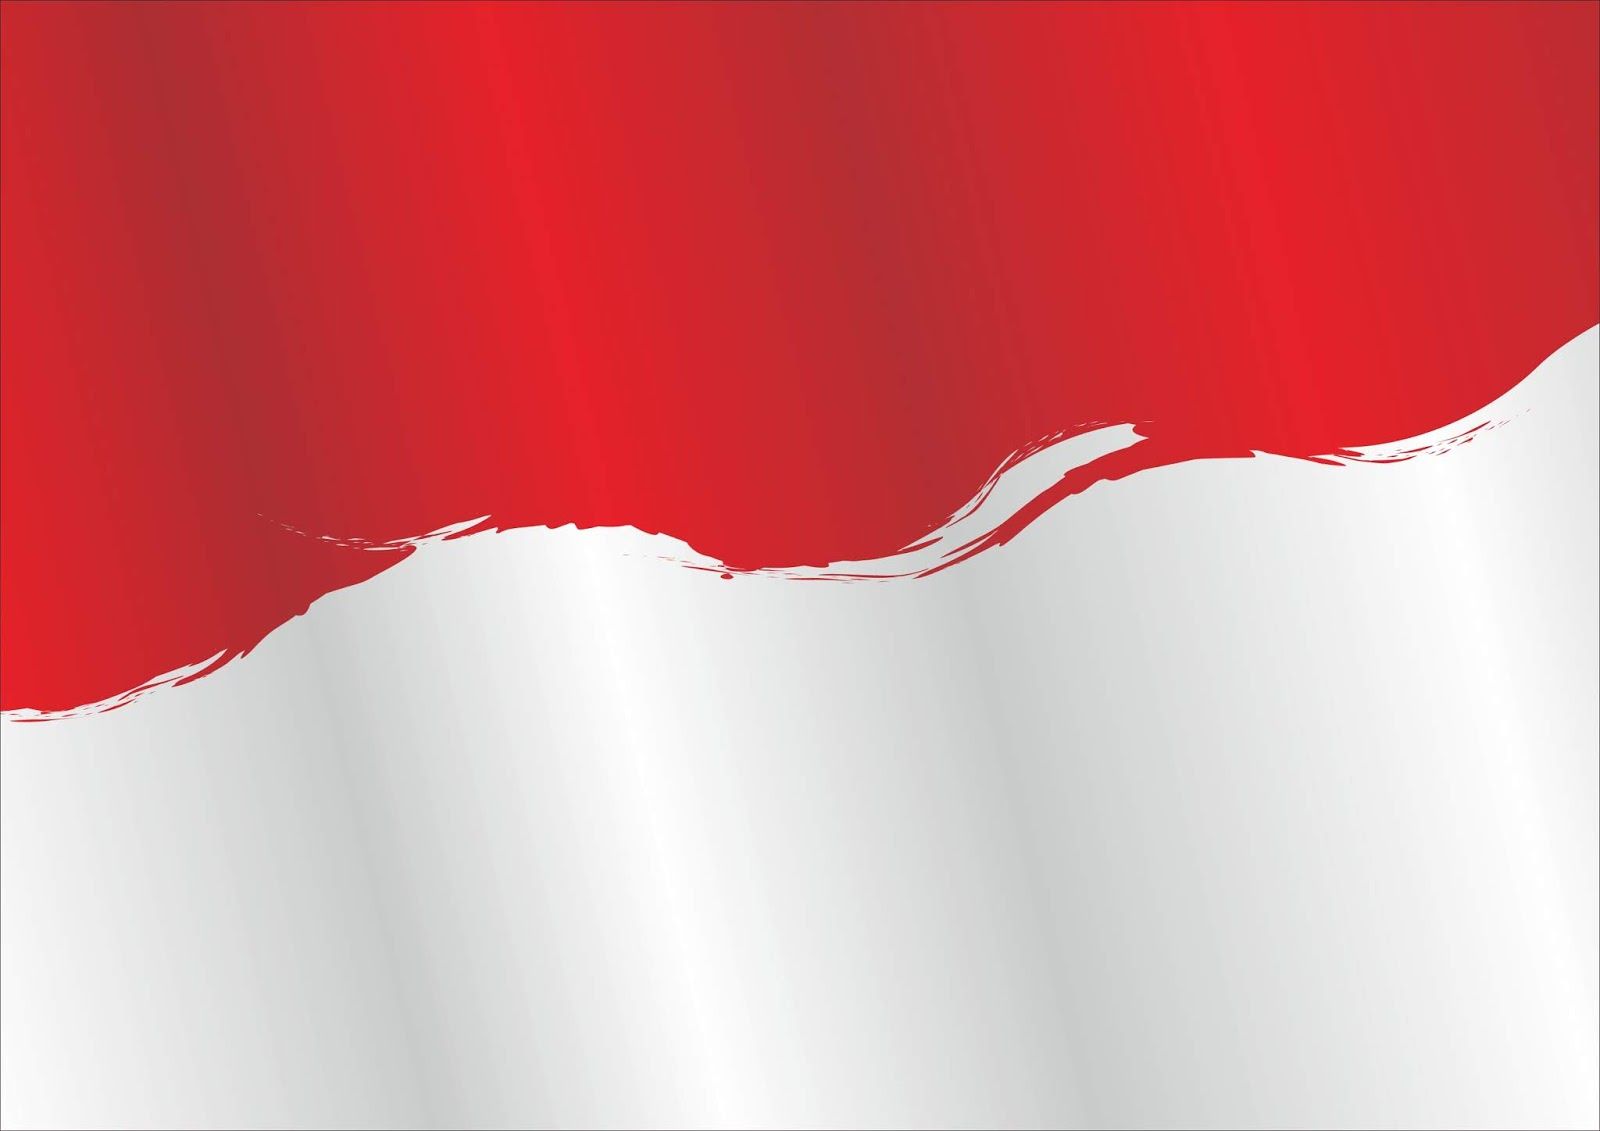 Wallpaper Merah Putih - KibrisPDR